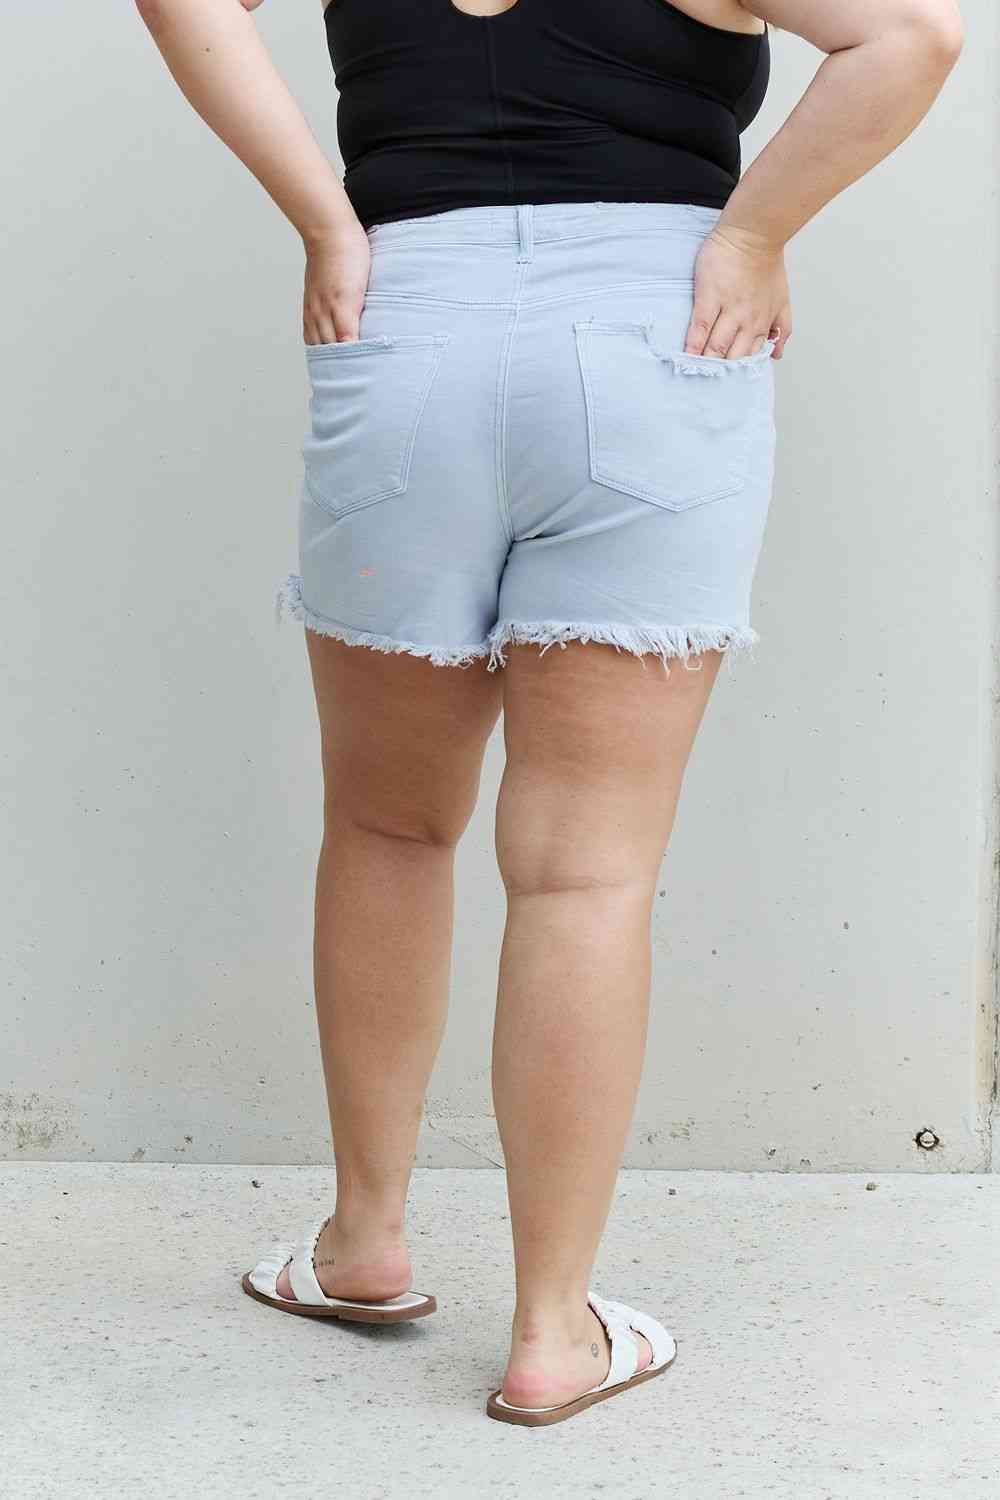 RISEN Katie Pantalones cortos desgastados de cintura alta de tamaño completo en azul hielo